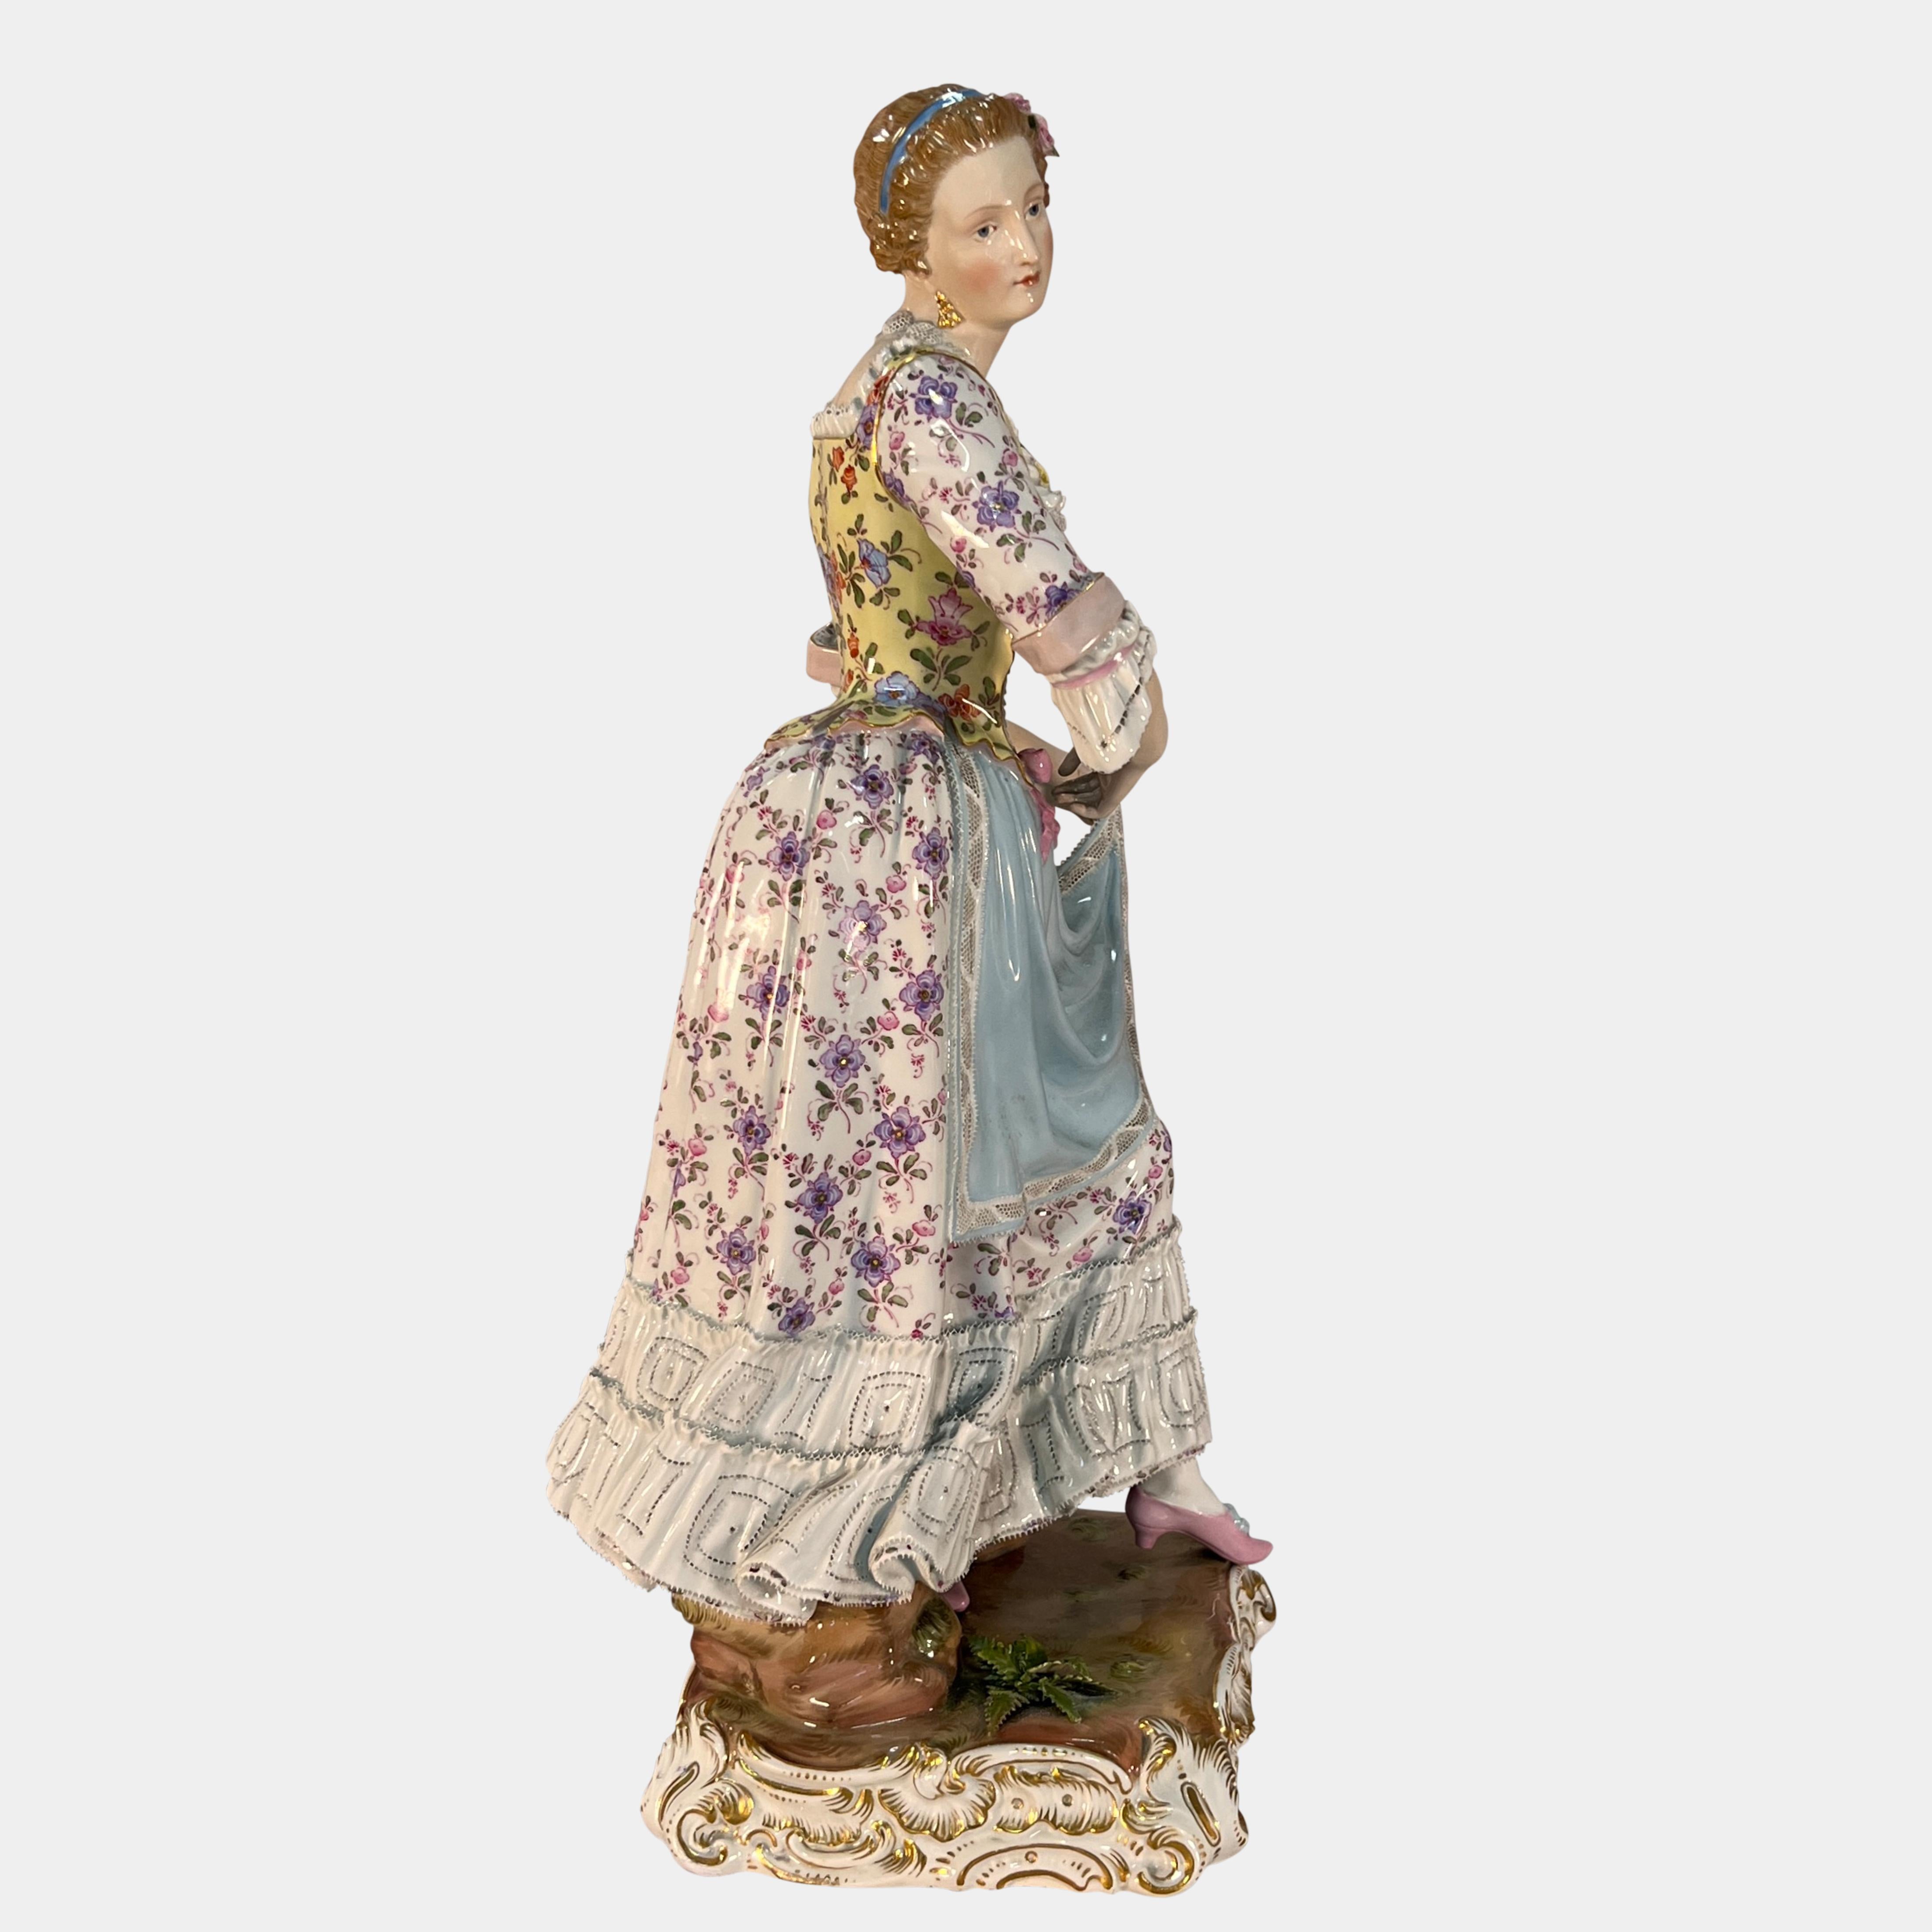 Magnifique grande figurine en porcelaine de Meissen du XIXe siècle représentant une jeune fille debout en robe d'époque avec un décor floral élaboré soulevant son tablier, son corset et ses bordures en fine dentelle trempée. La figure est soutenue